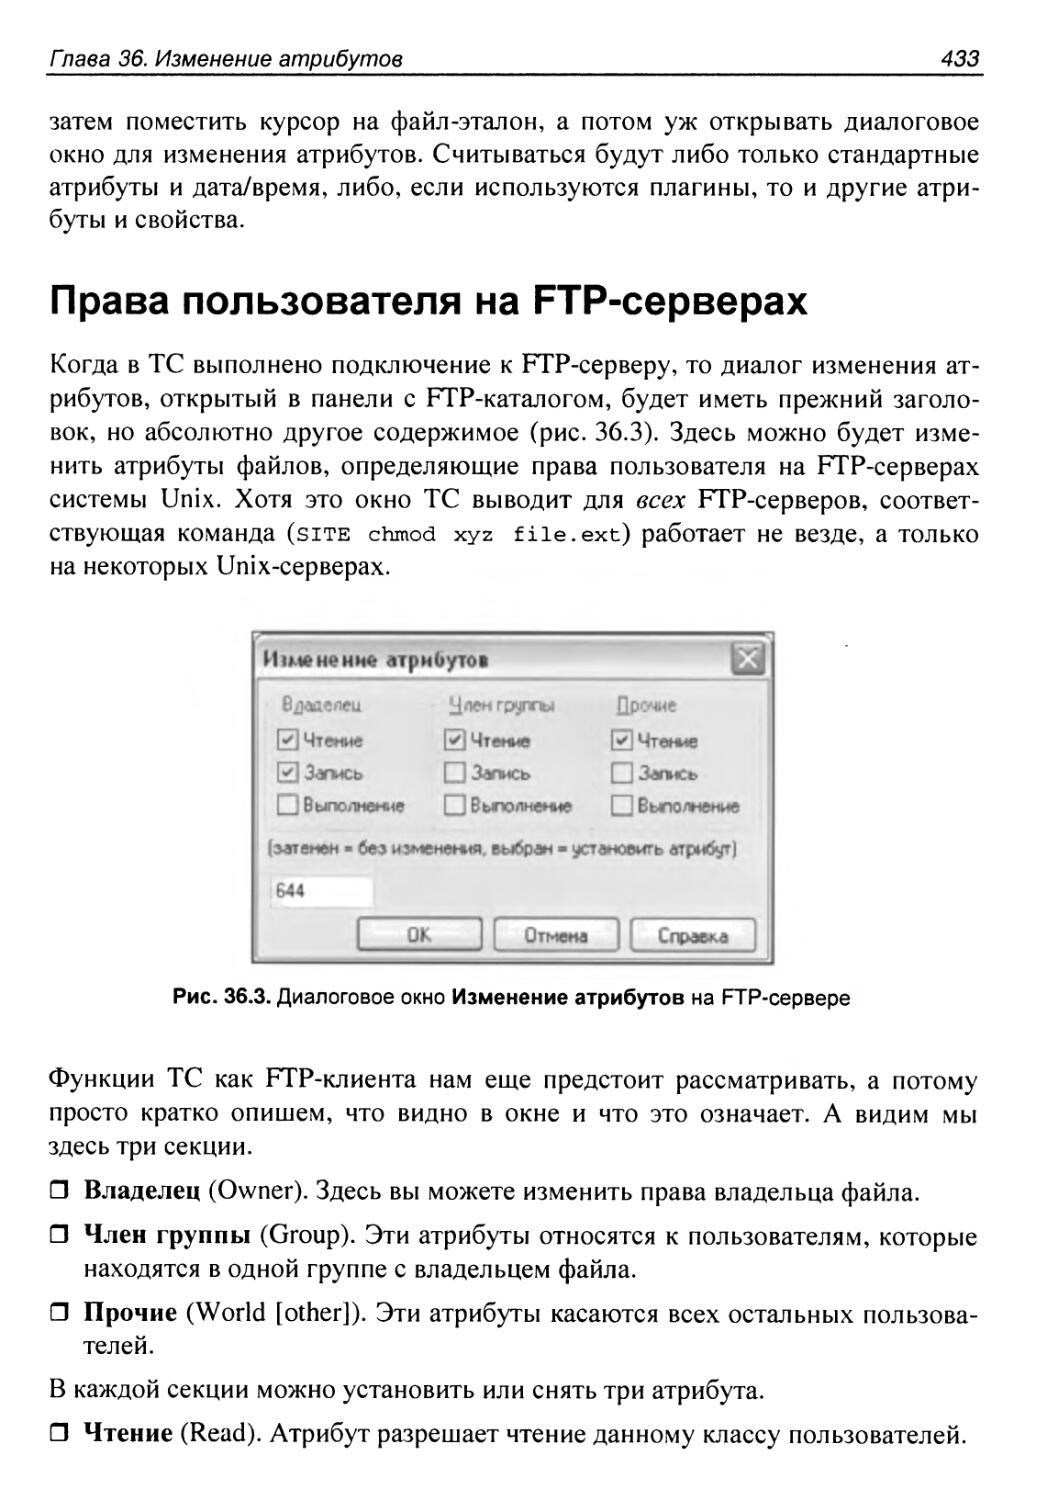 Права пользователя на FTP-серверах